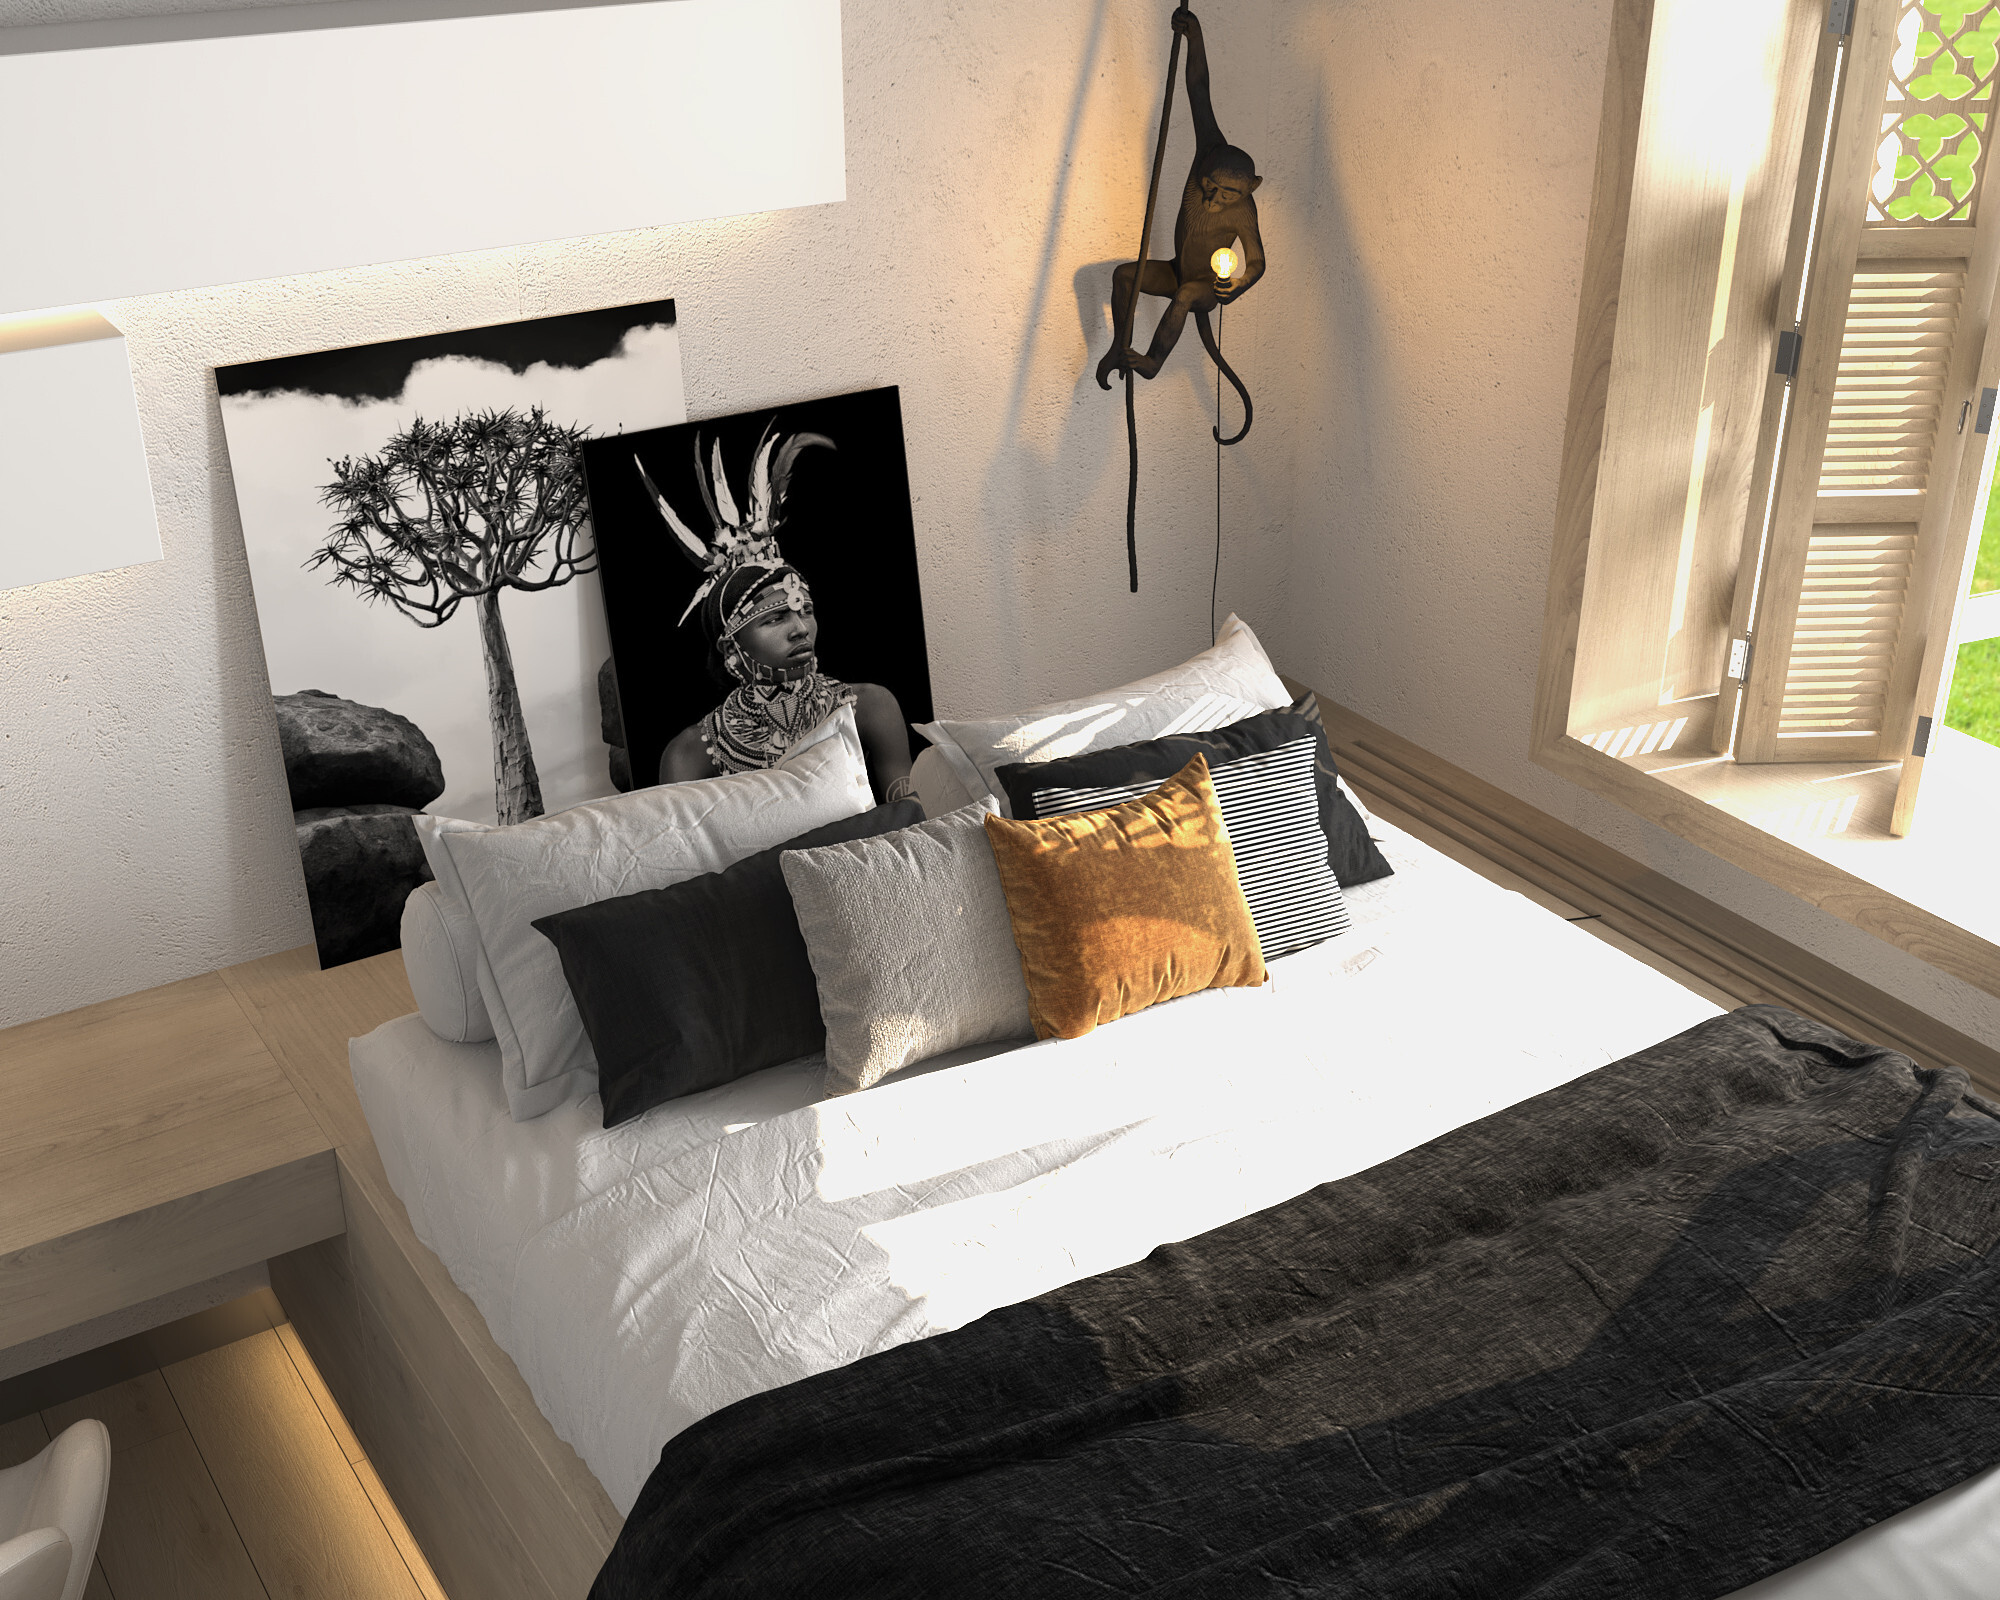 Интерьер спальни с бра над кроватью и светильниками над кроватью в стиле лофт